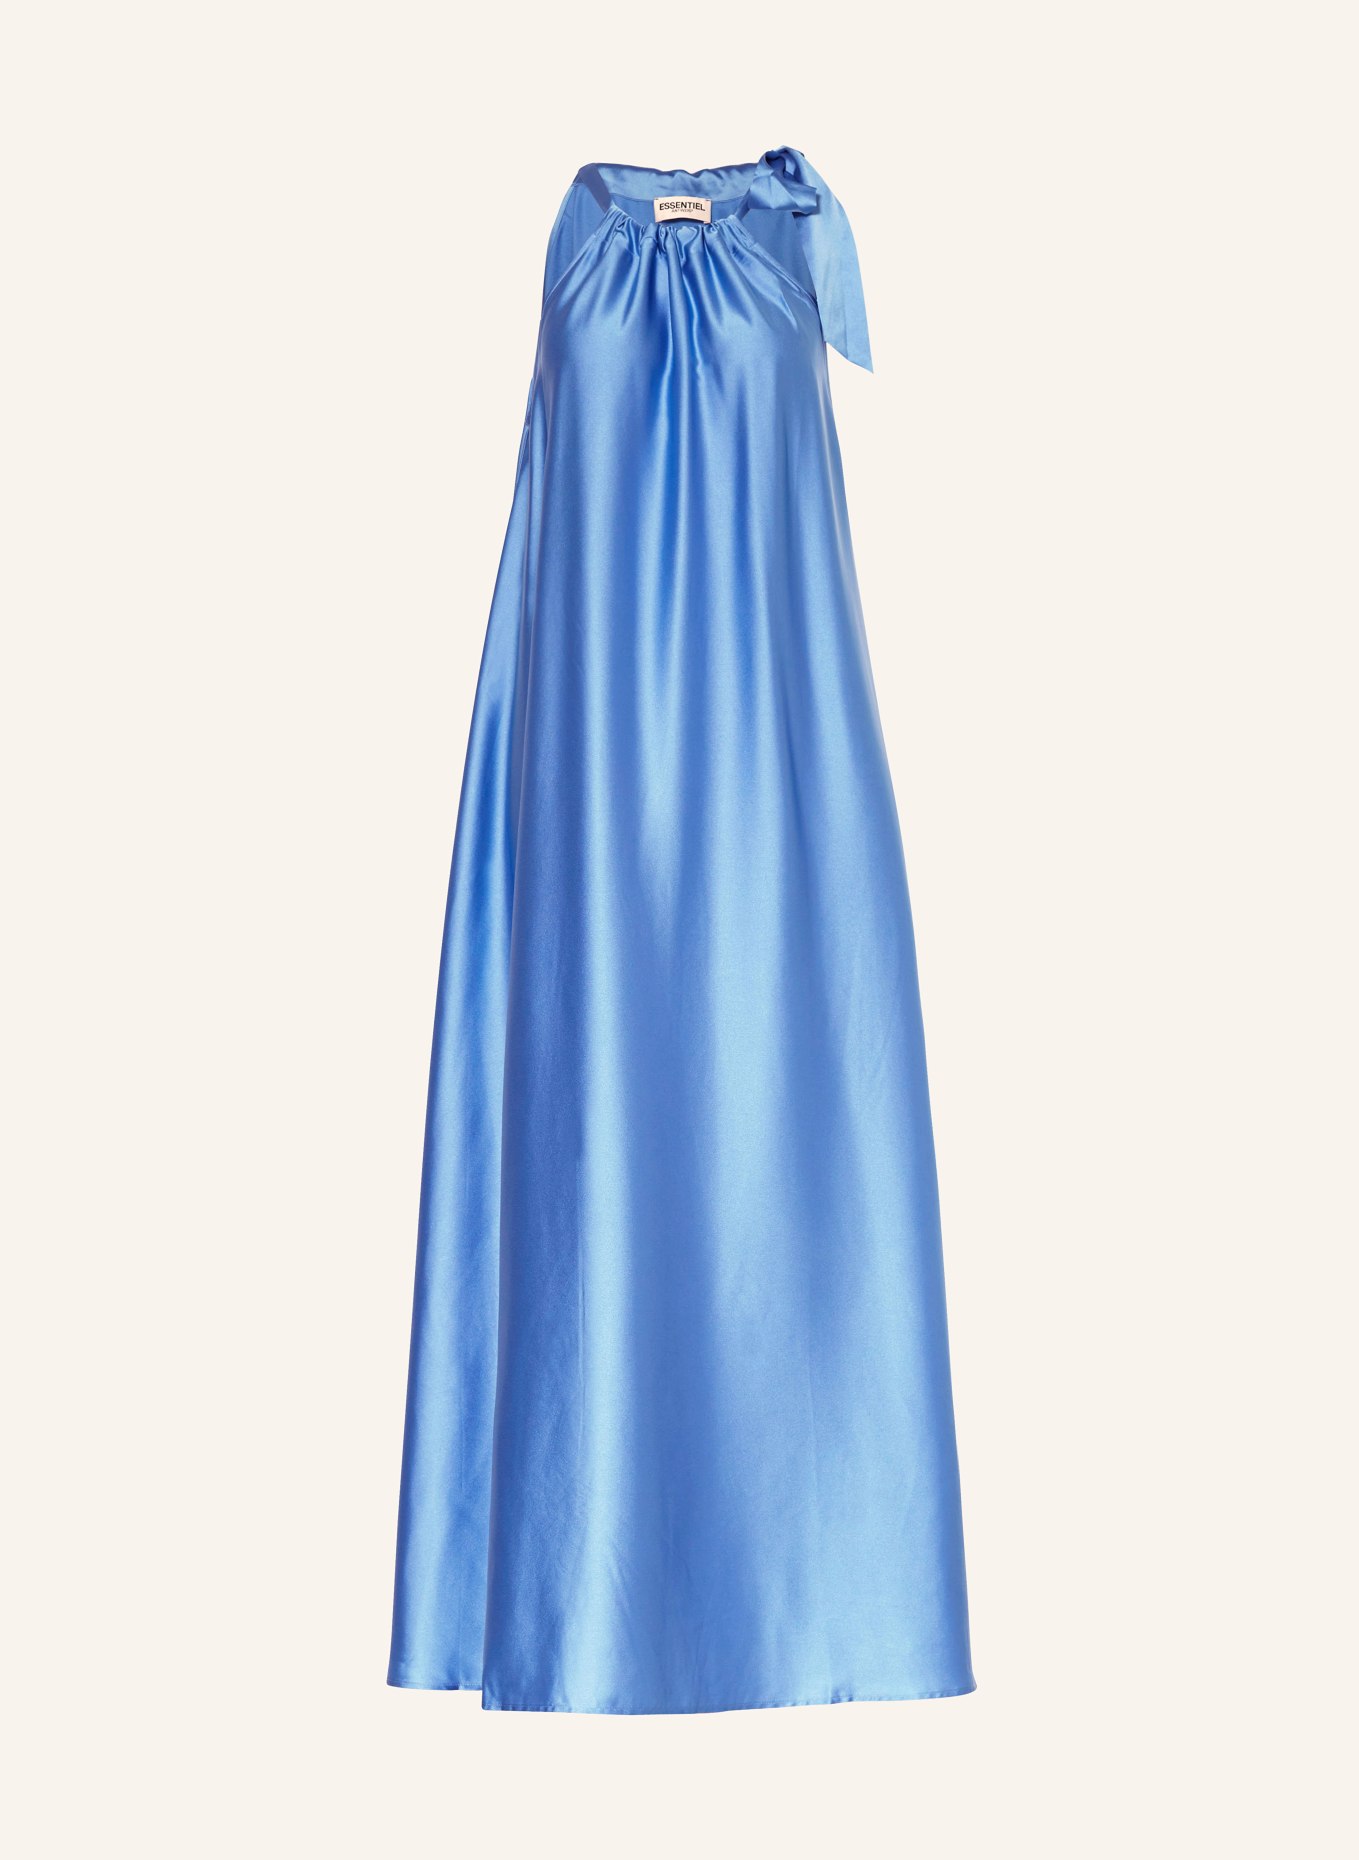 ESSENTIEL ANTWERP Satin dress FAMSON, Color: BLUE (Image 1)